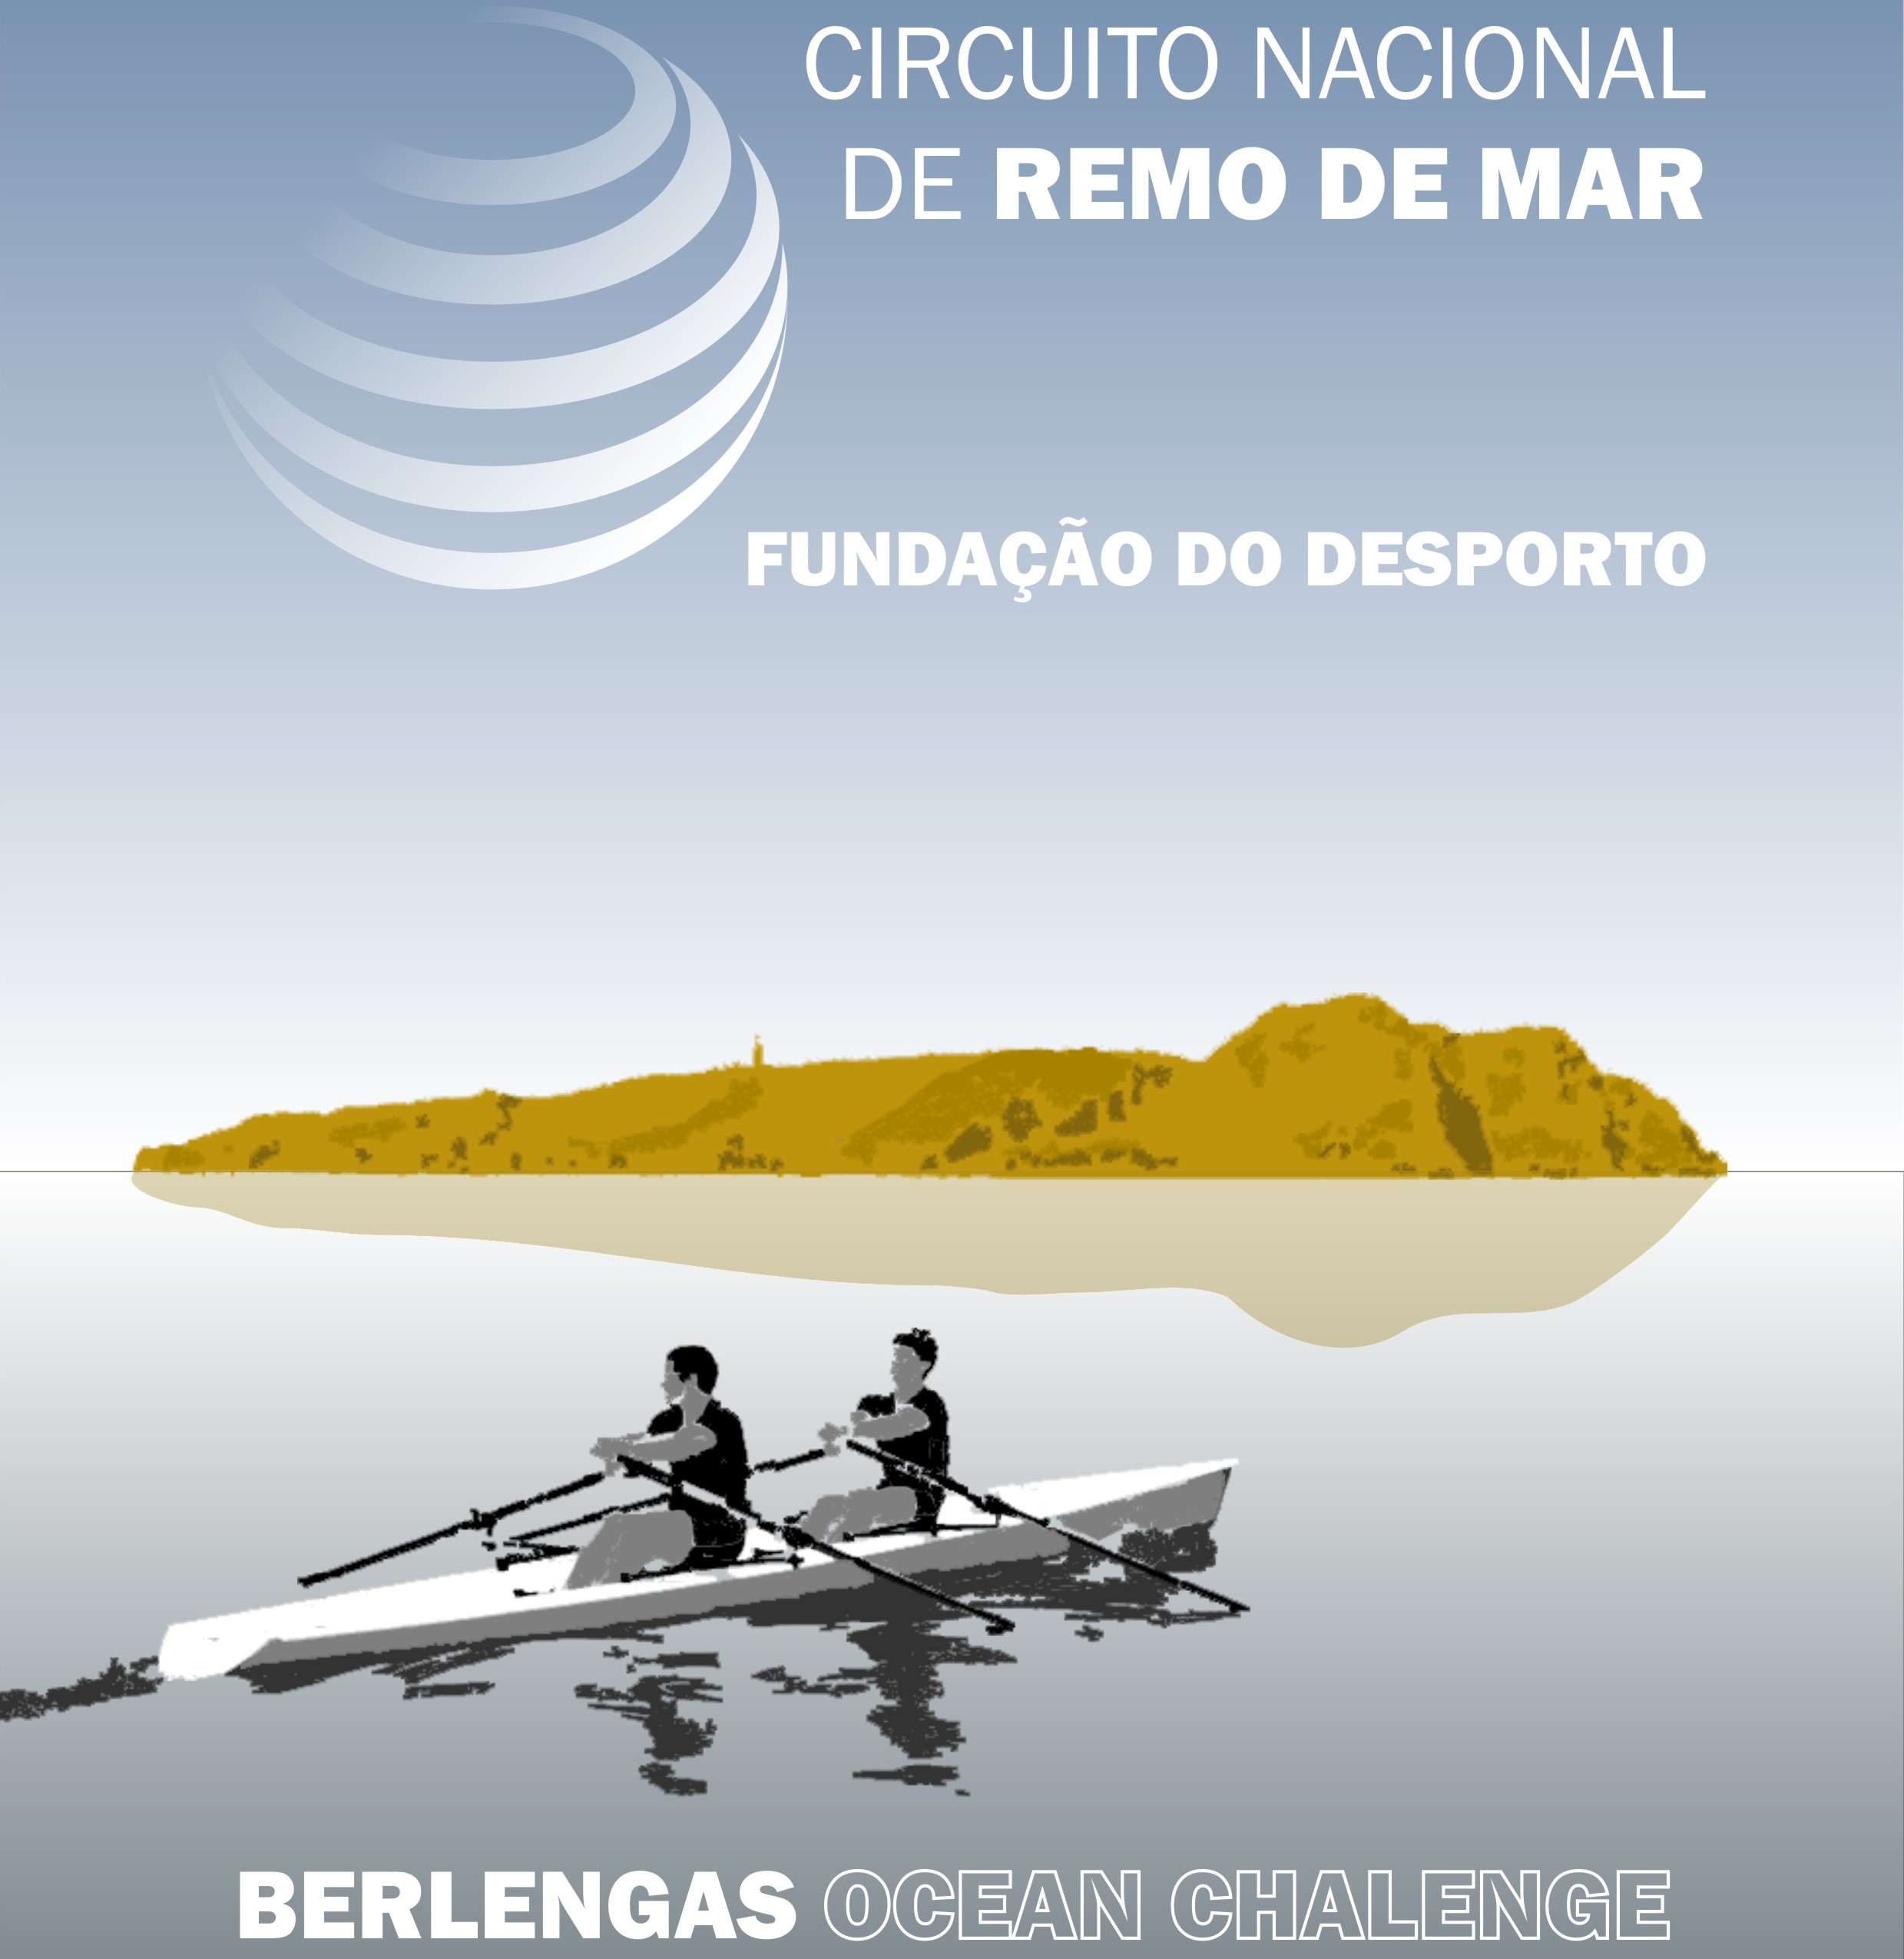 Circuito Nacional de Remo de Mar – Fundação do Desporto